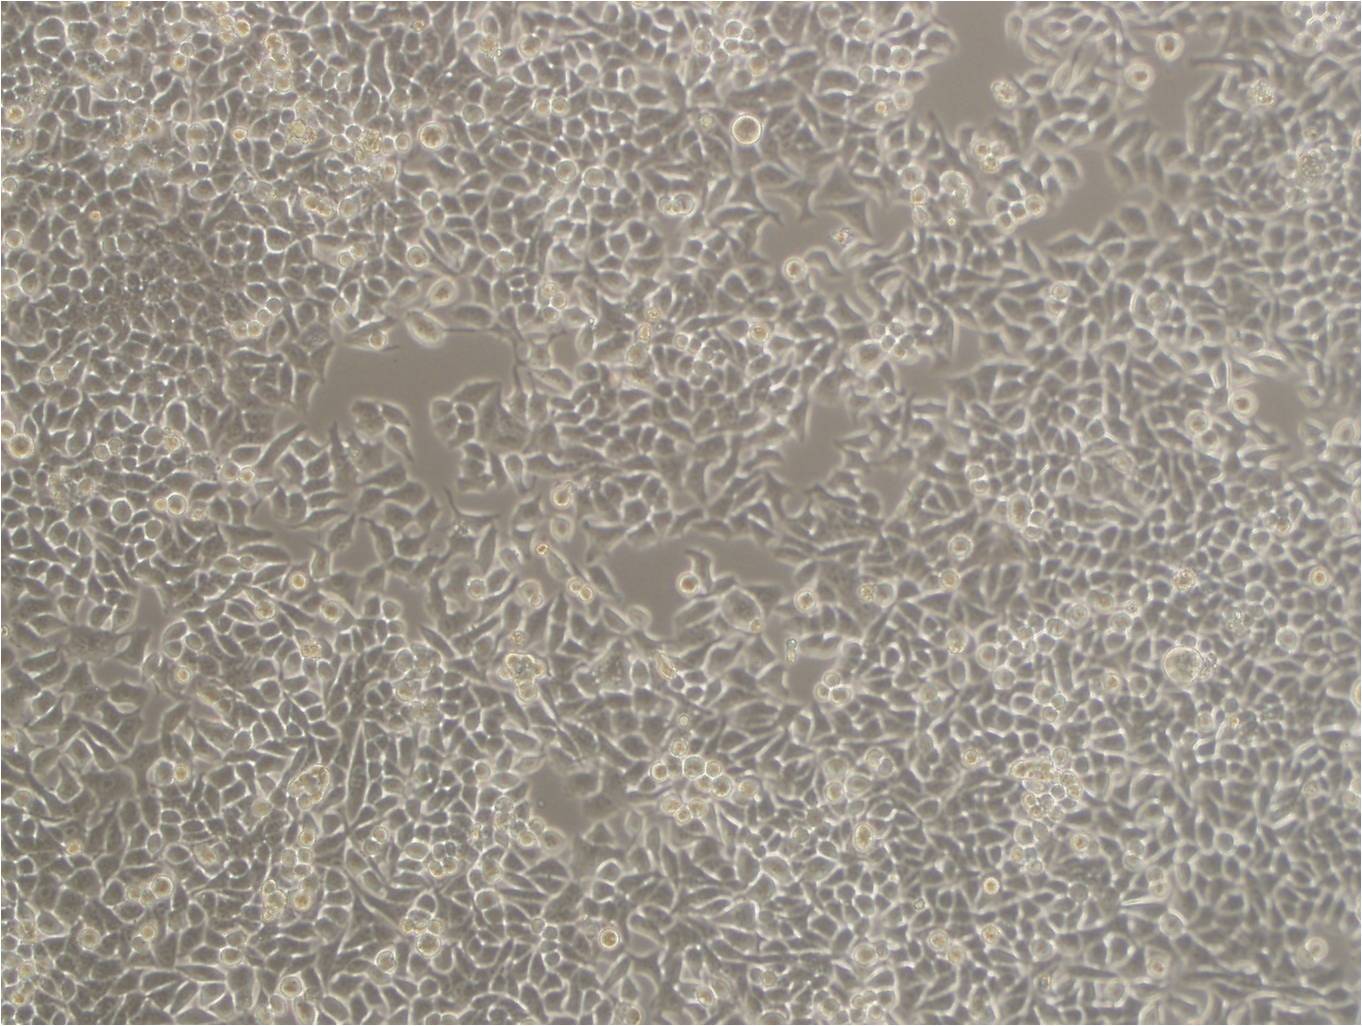 LA-795 cell line小鼠肺腺癌细胞系